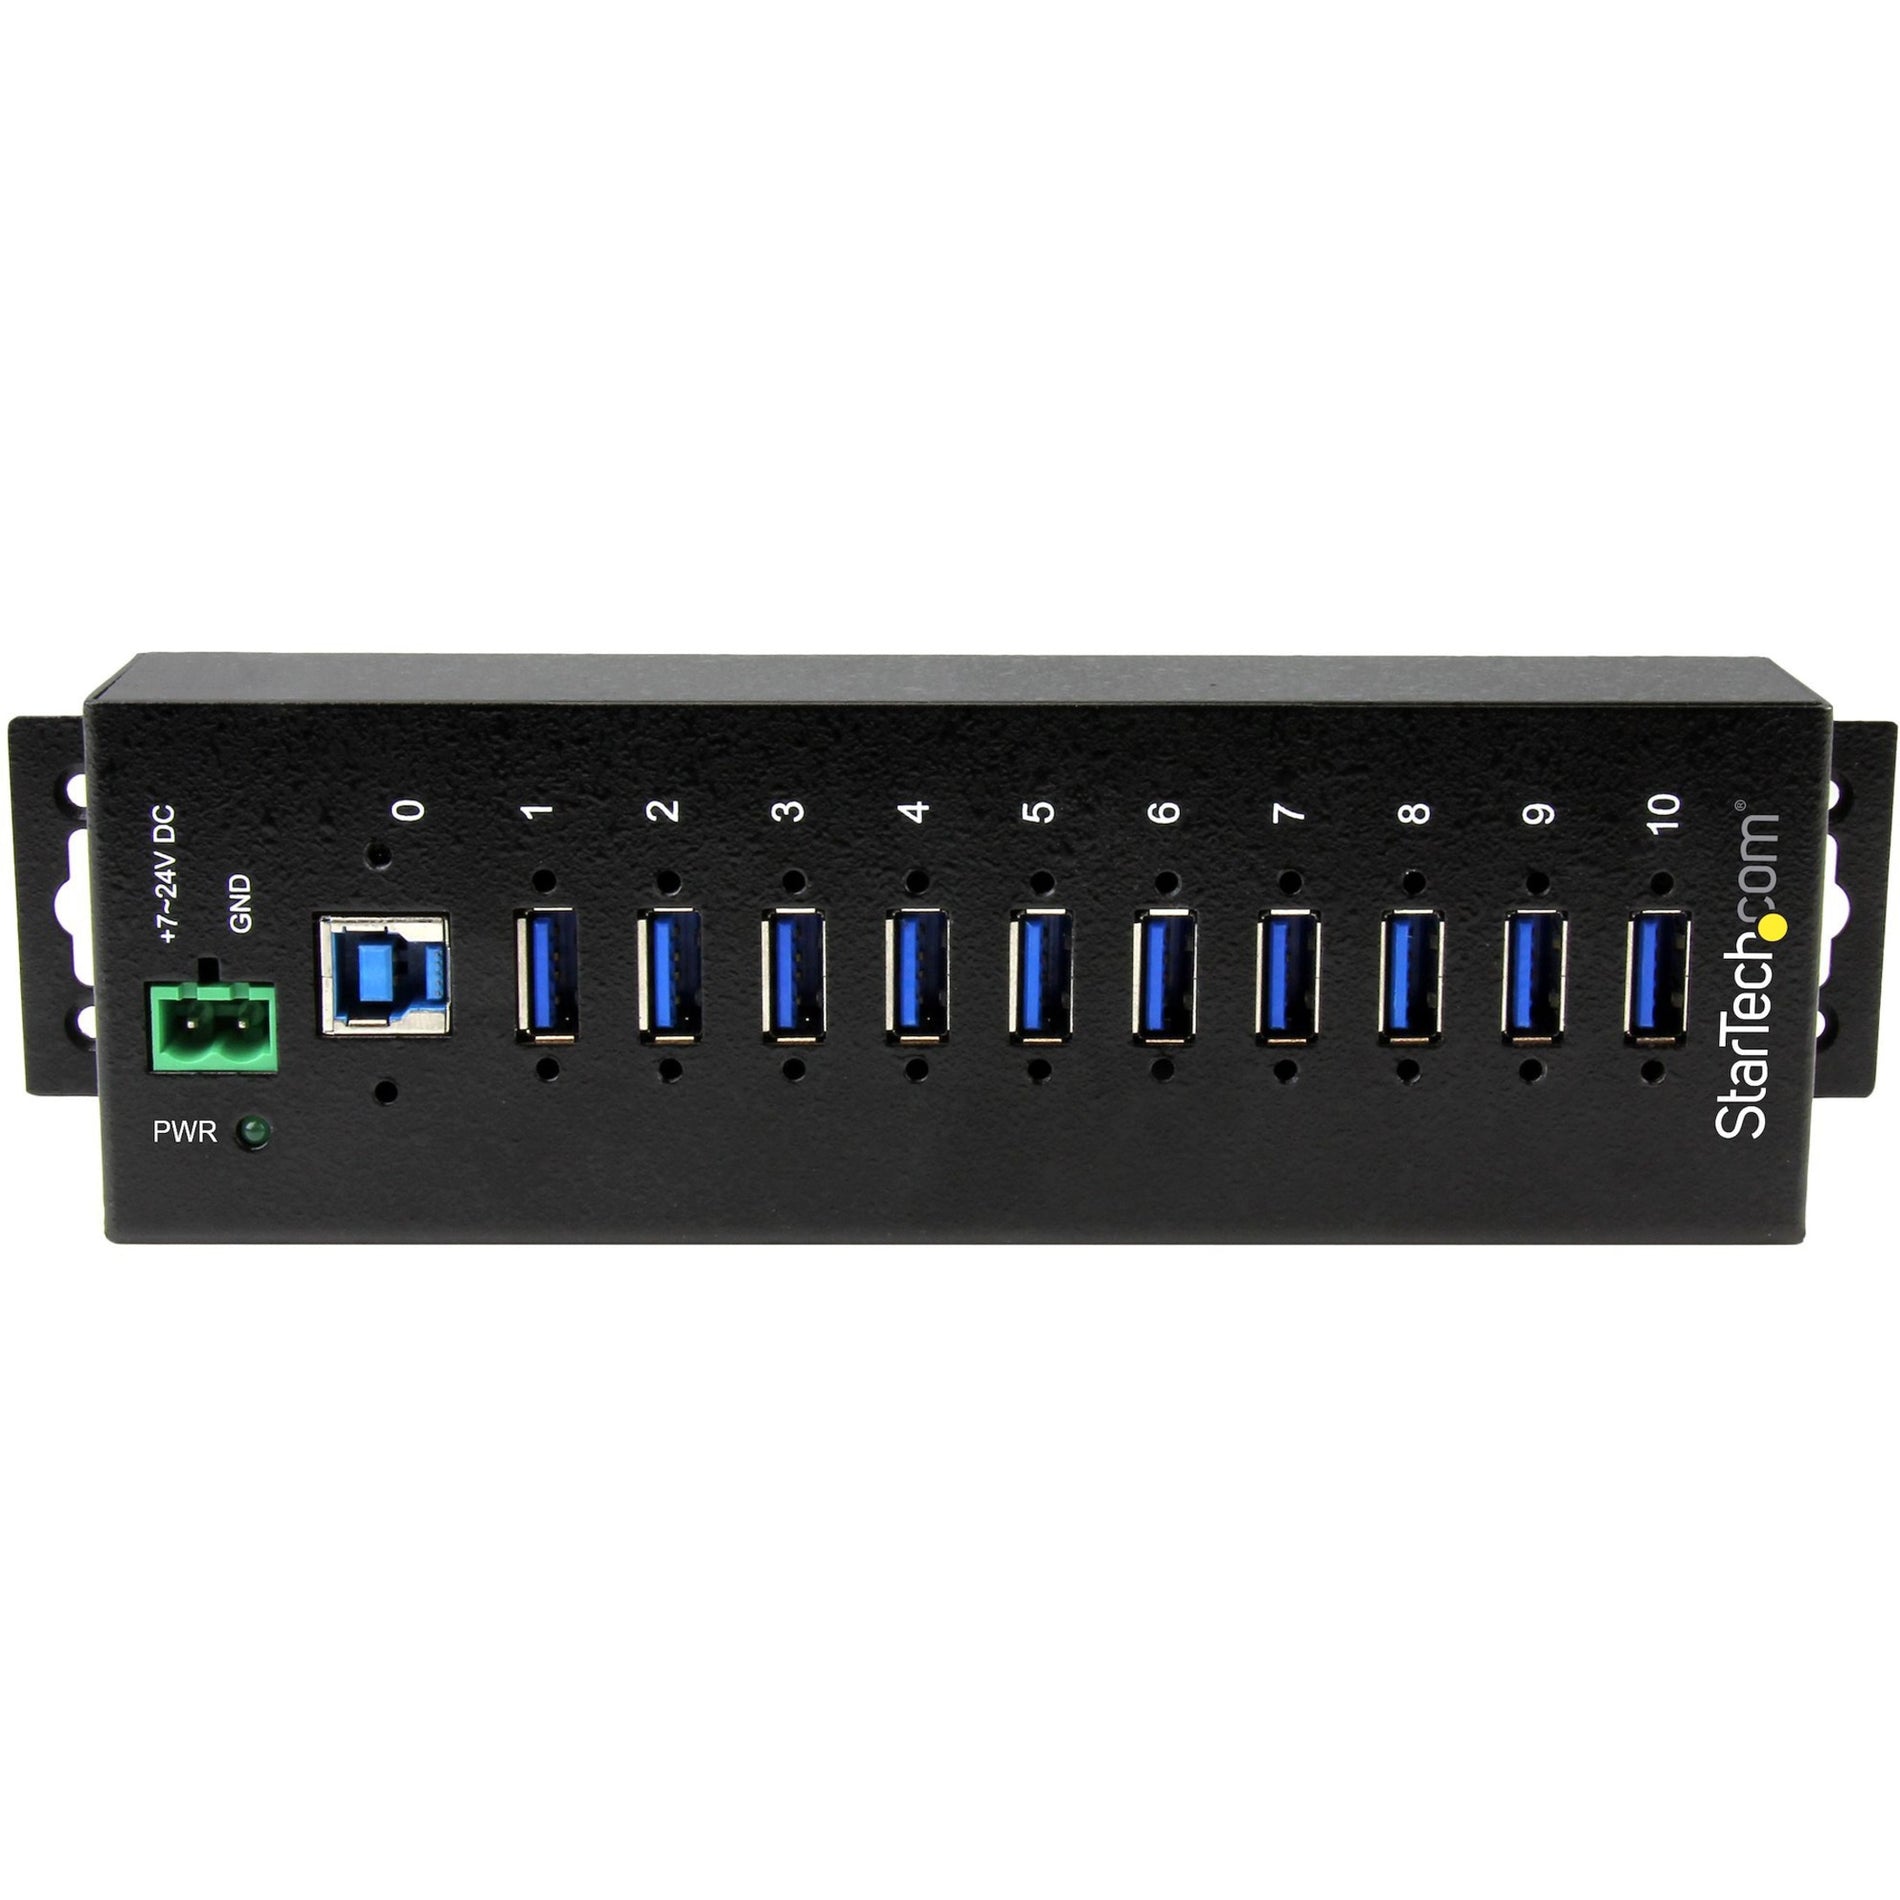 スタートテック・ドットコム ST1030USBM 10-ポート工業用USB 3.0 ハブ、ESD およびサージプロテクション、DIN レールまたは面取り可能なメタルハウジング